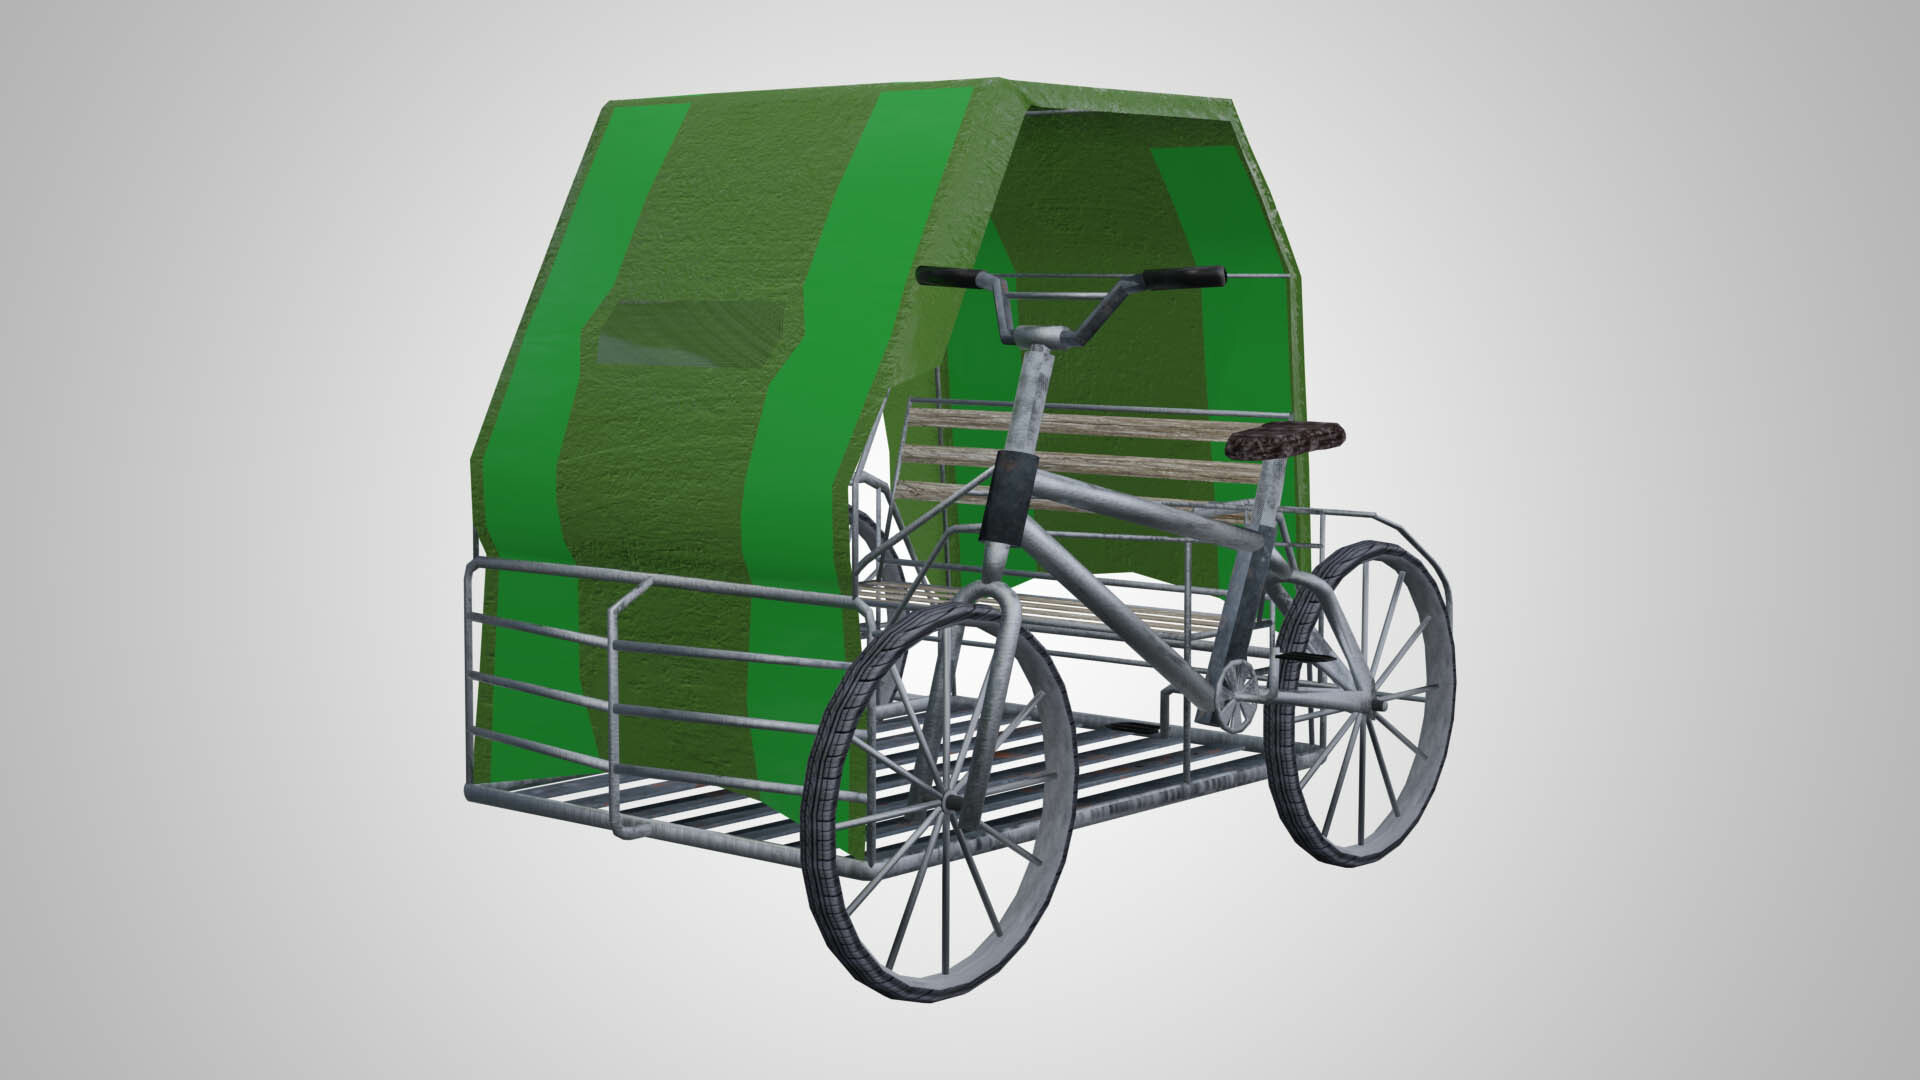 pedicab trailer